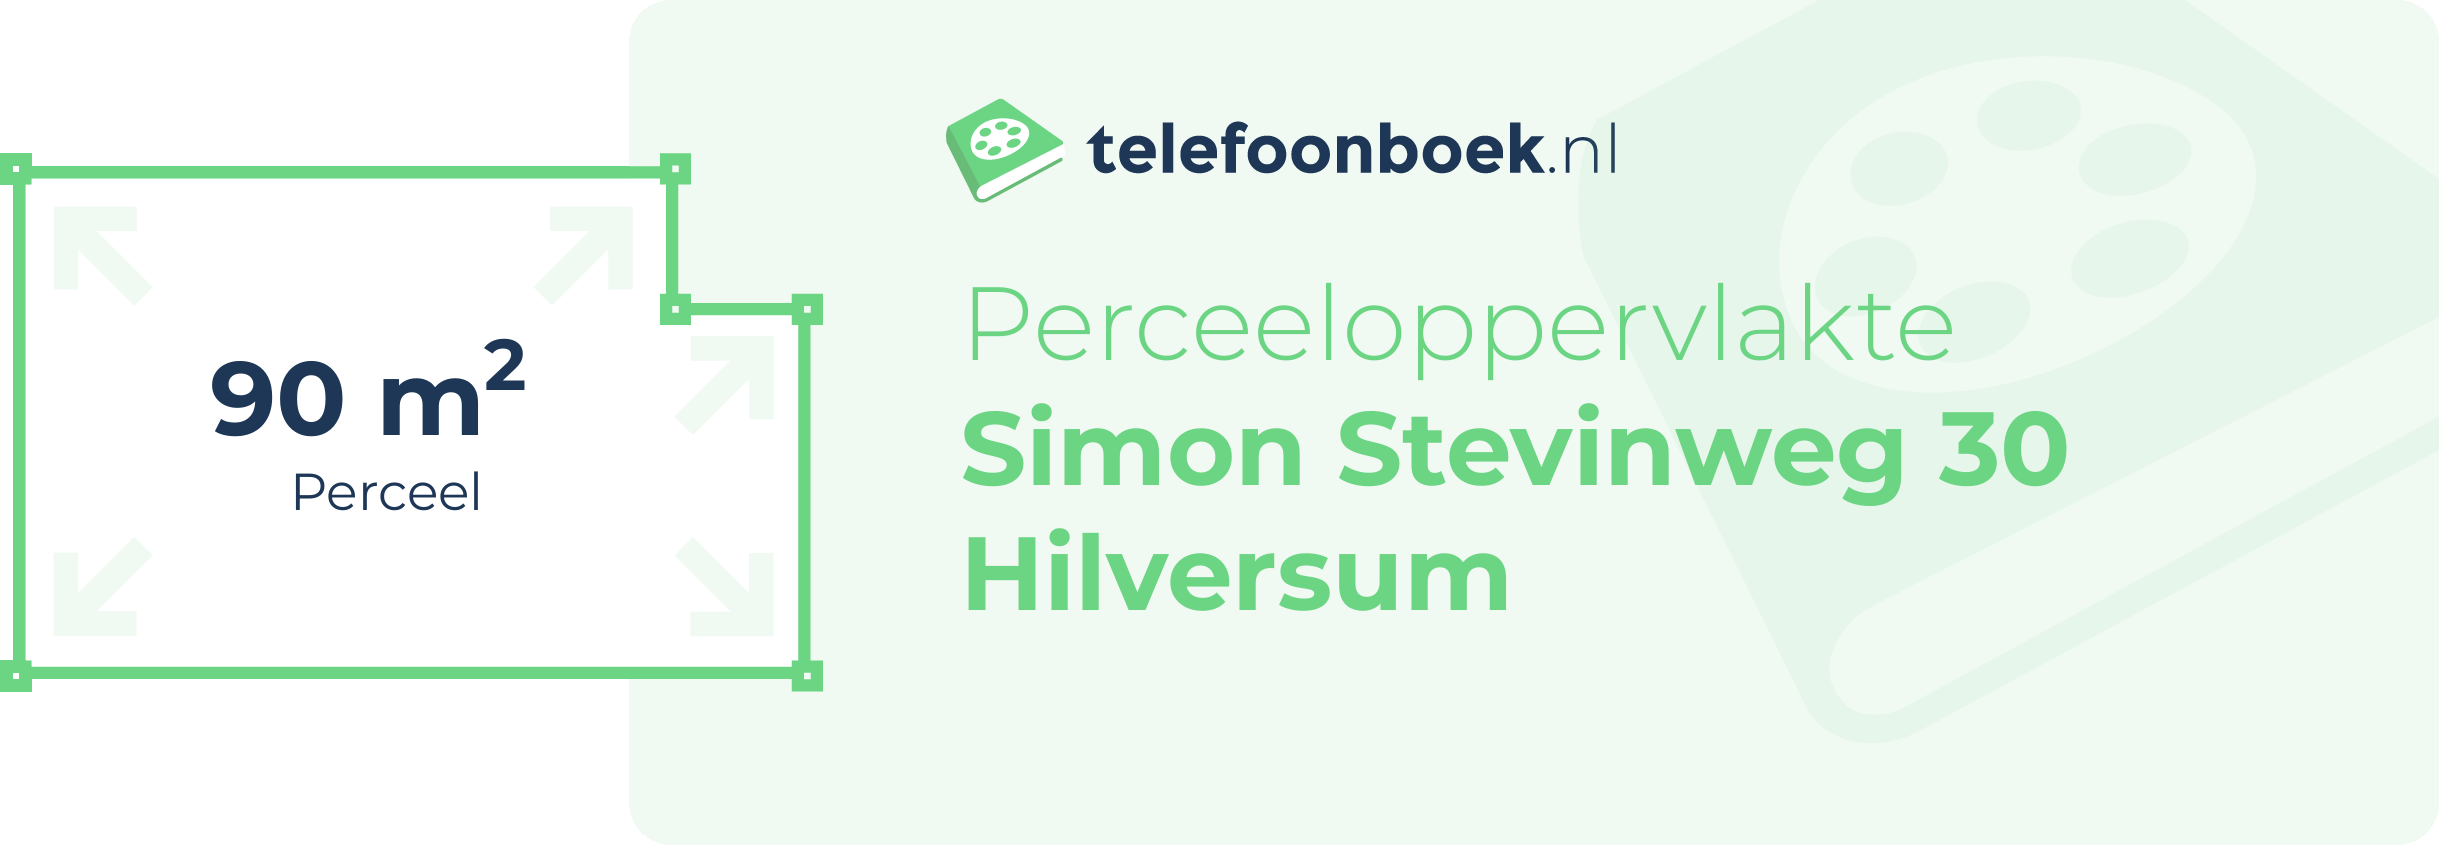 Perceeloppervlakte Simon Stevinweg 30 Hilversum